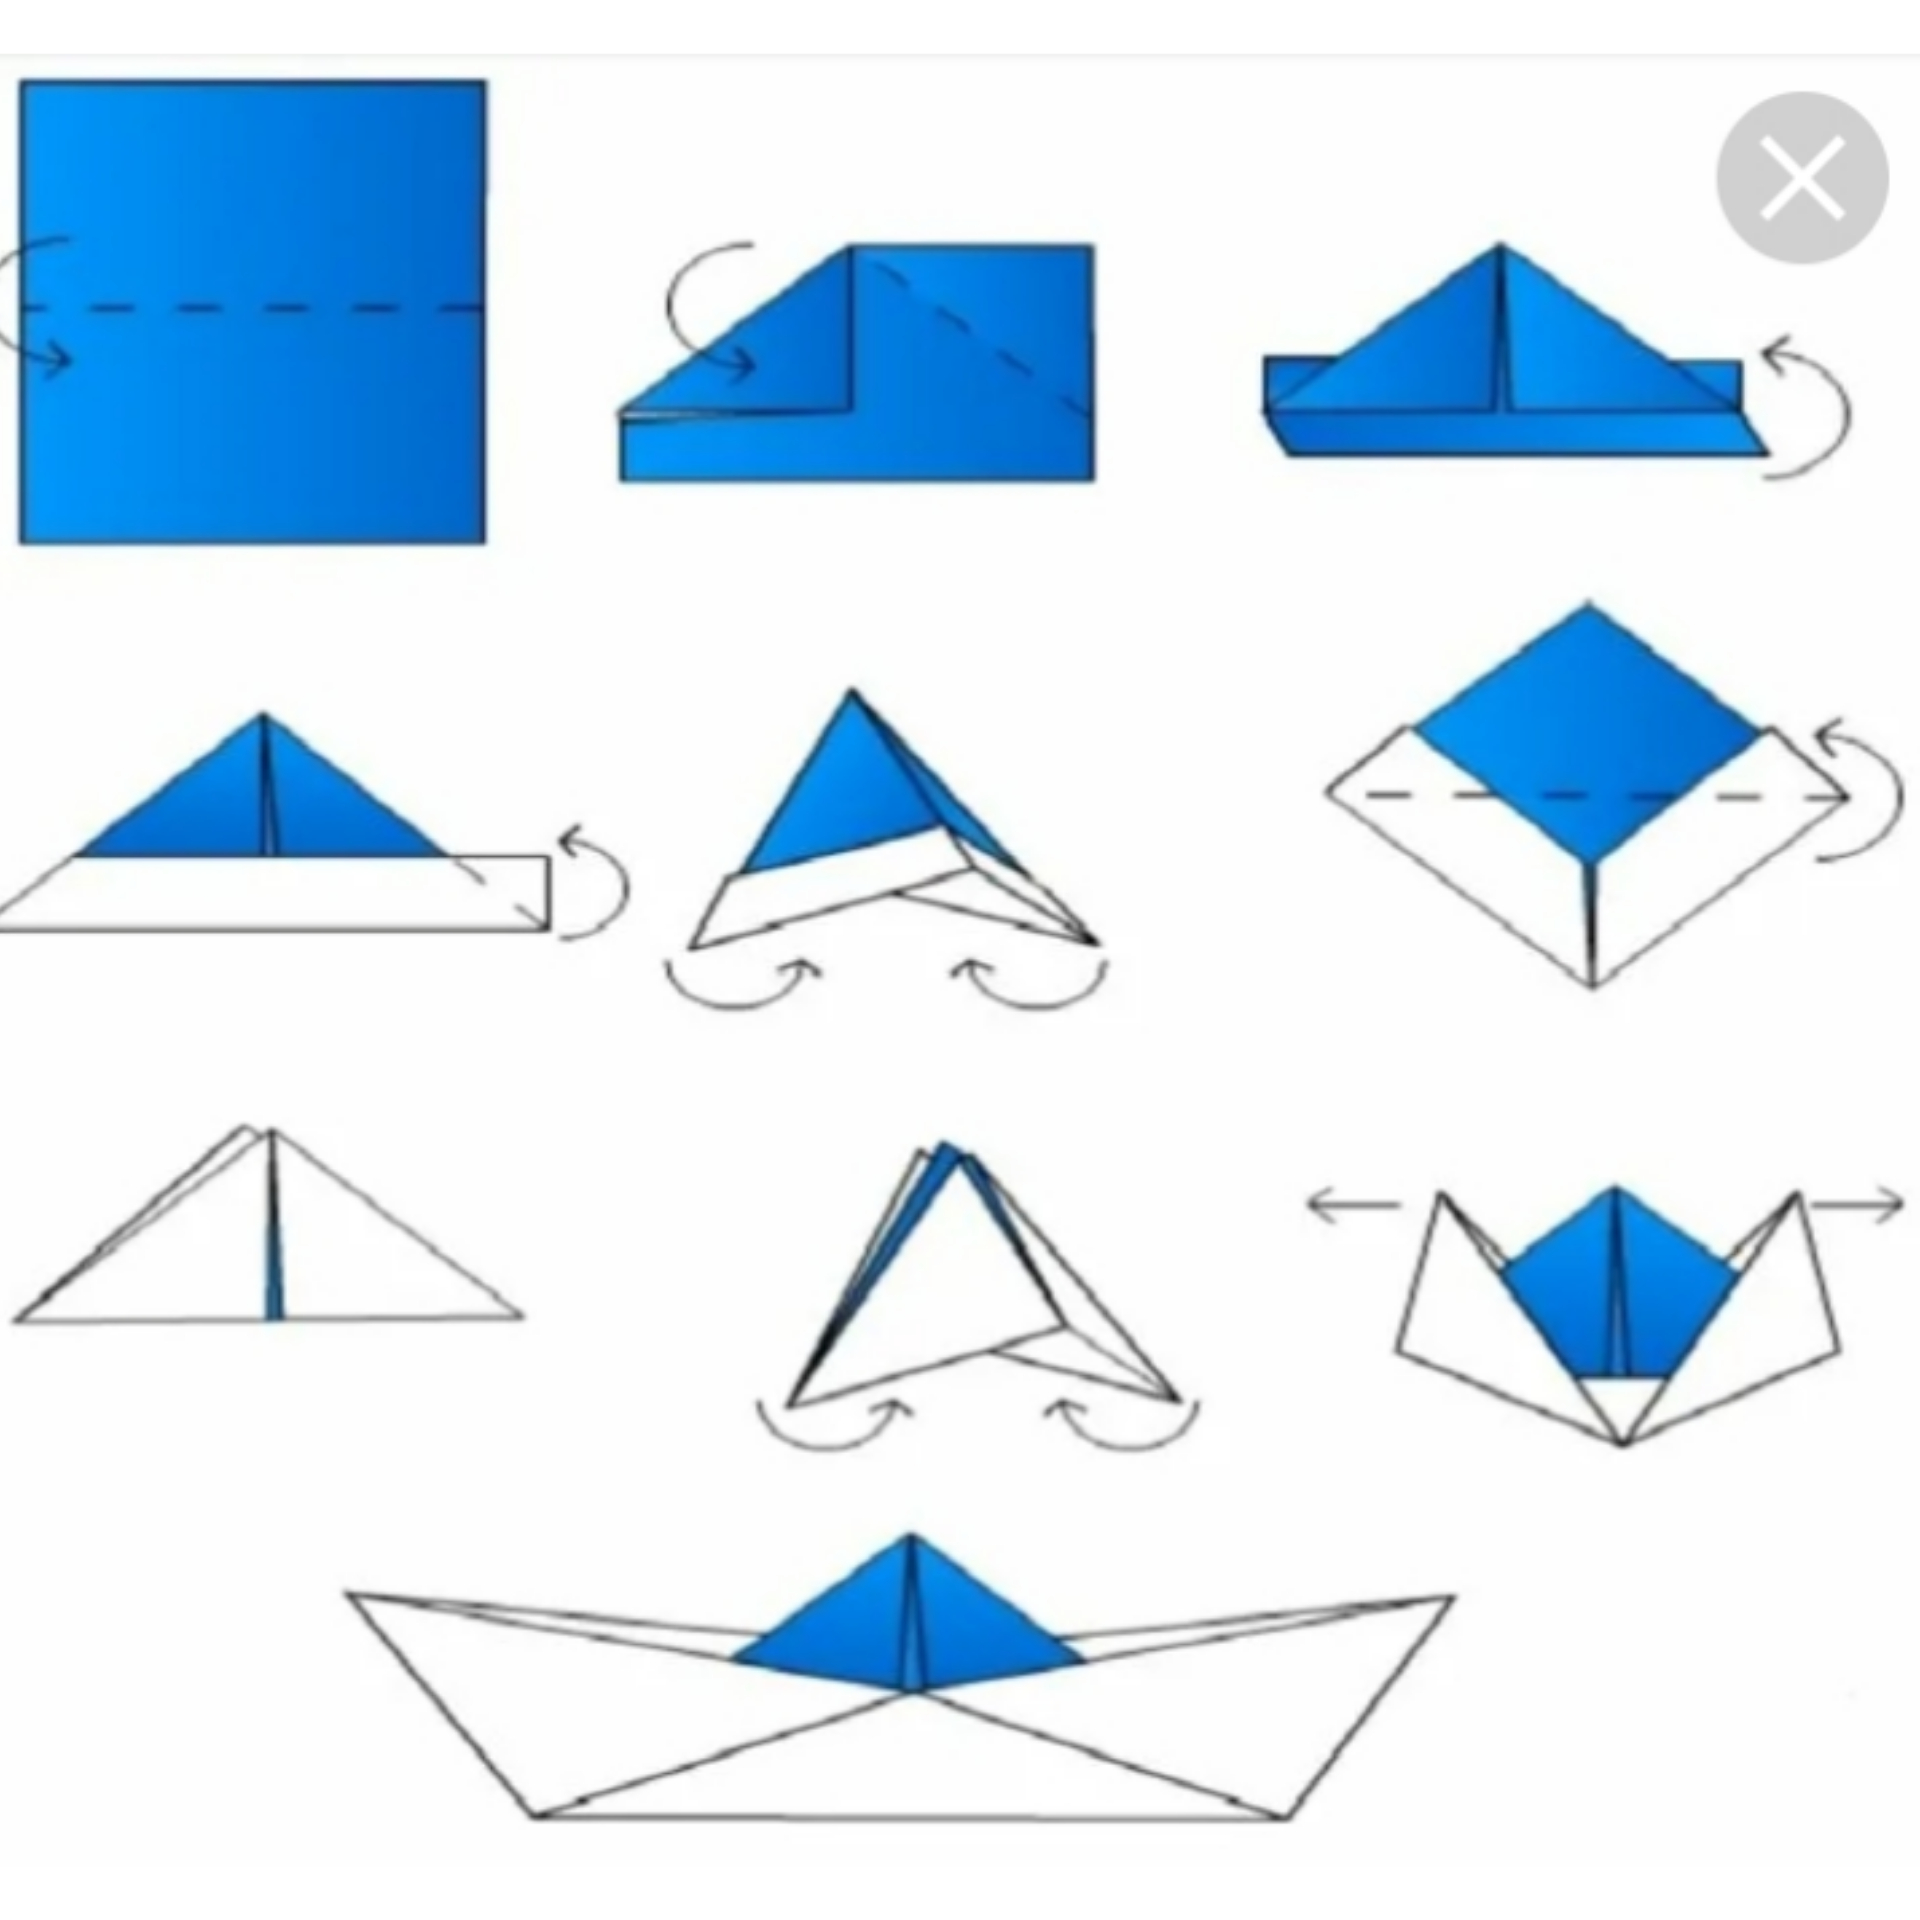 Кораблик из бумаги легко. Оригами из бумаги корабль с трубами на прозрачном фоне. Как сделать кораблики из большой бумаги там 1(234)567-89-10.